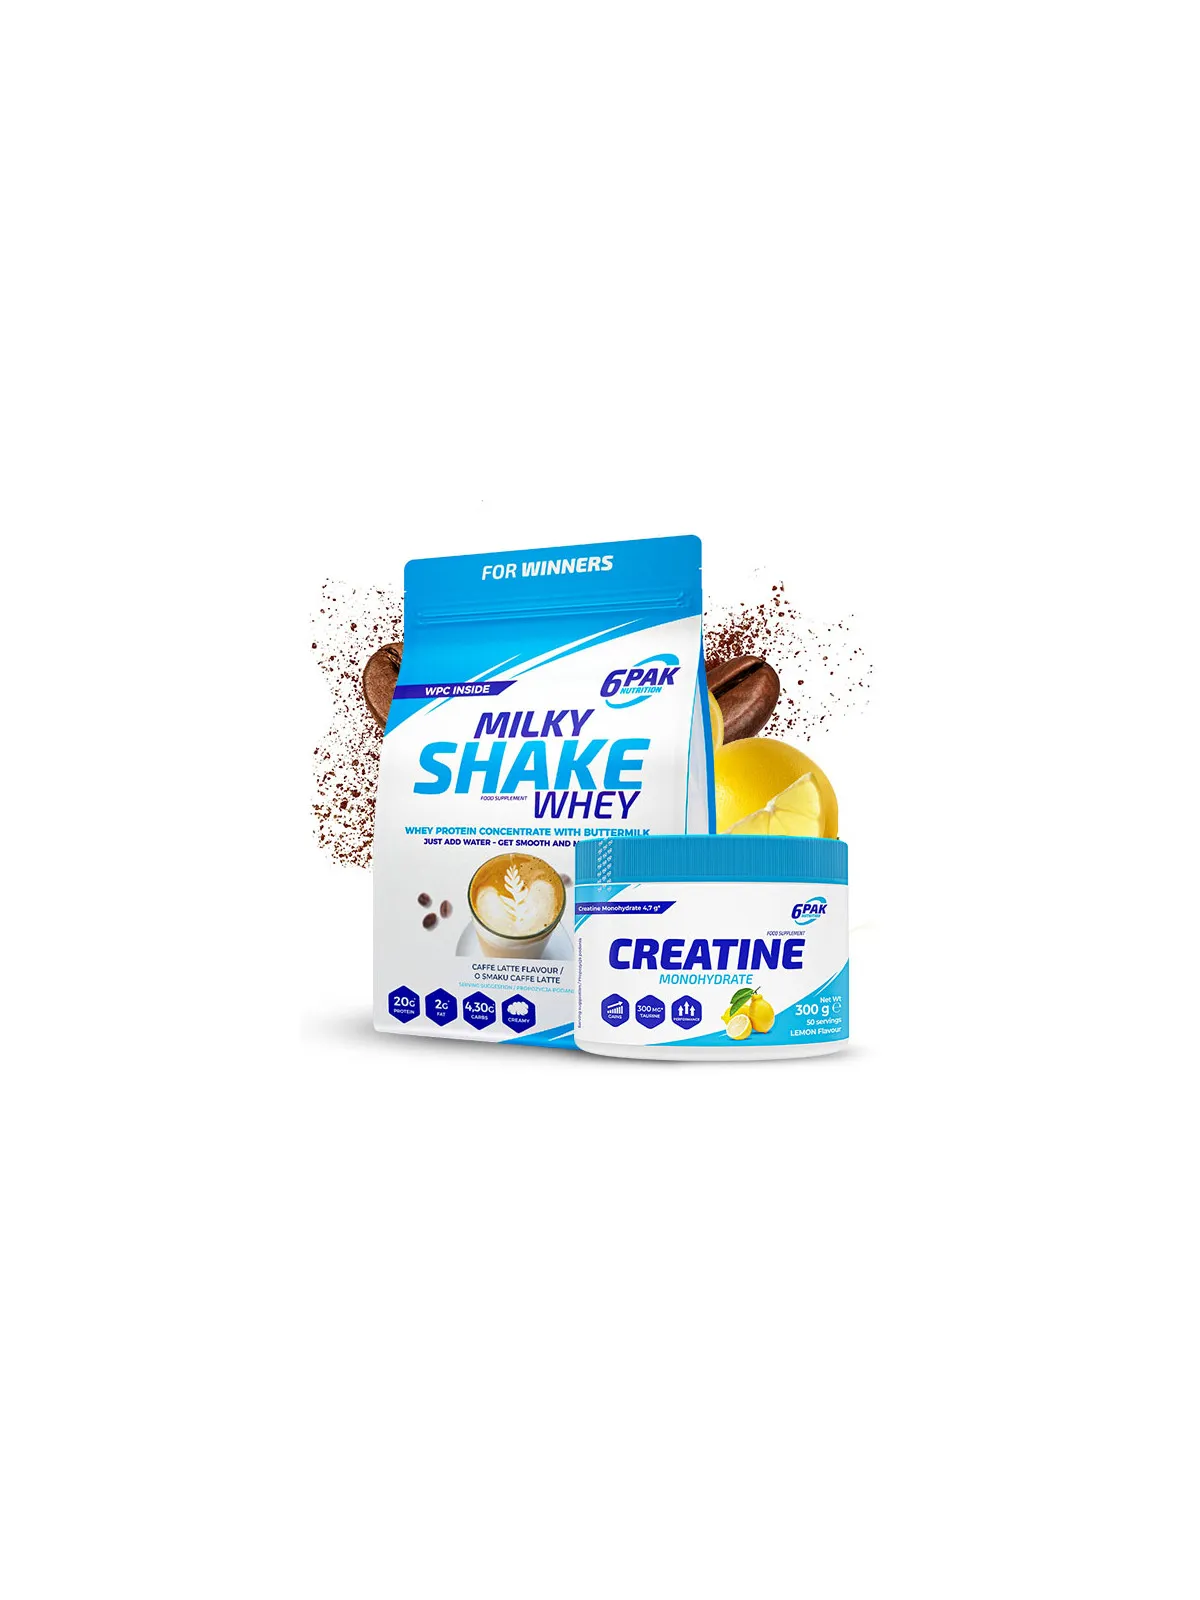 Kremowe Białko Milky Shake Whey w zestawie z kreatyną